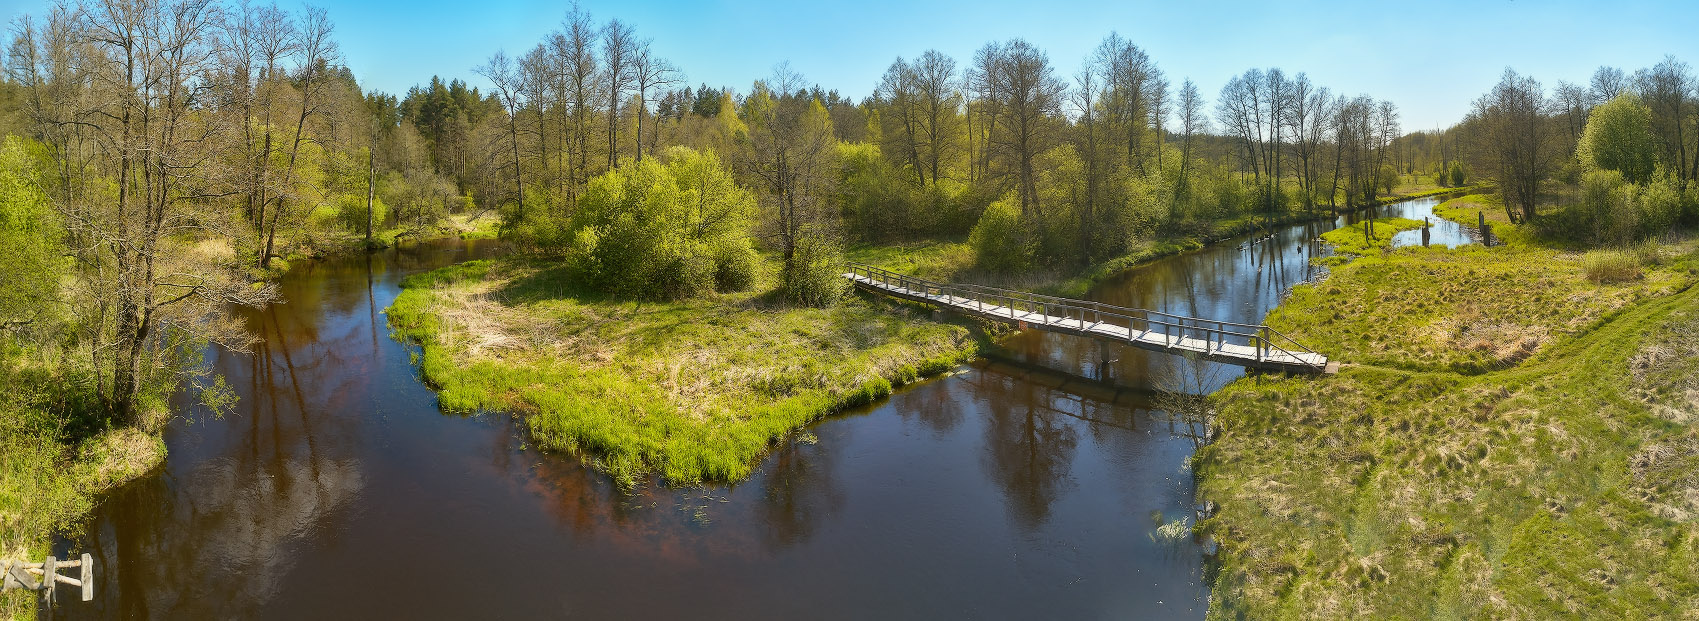 Весна на Узлянке Беларусь Весна Май Панорама Река Узлянка